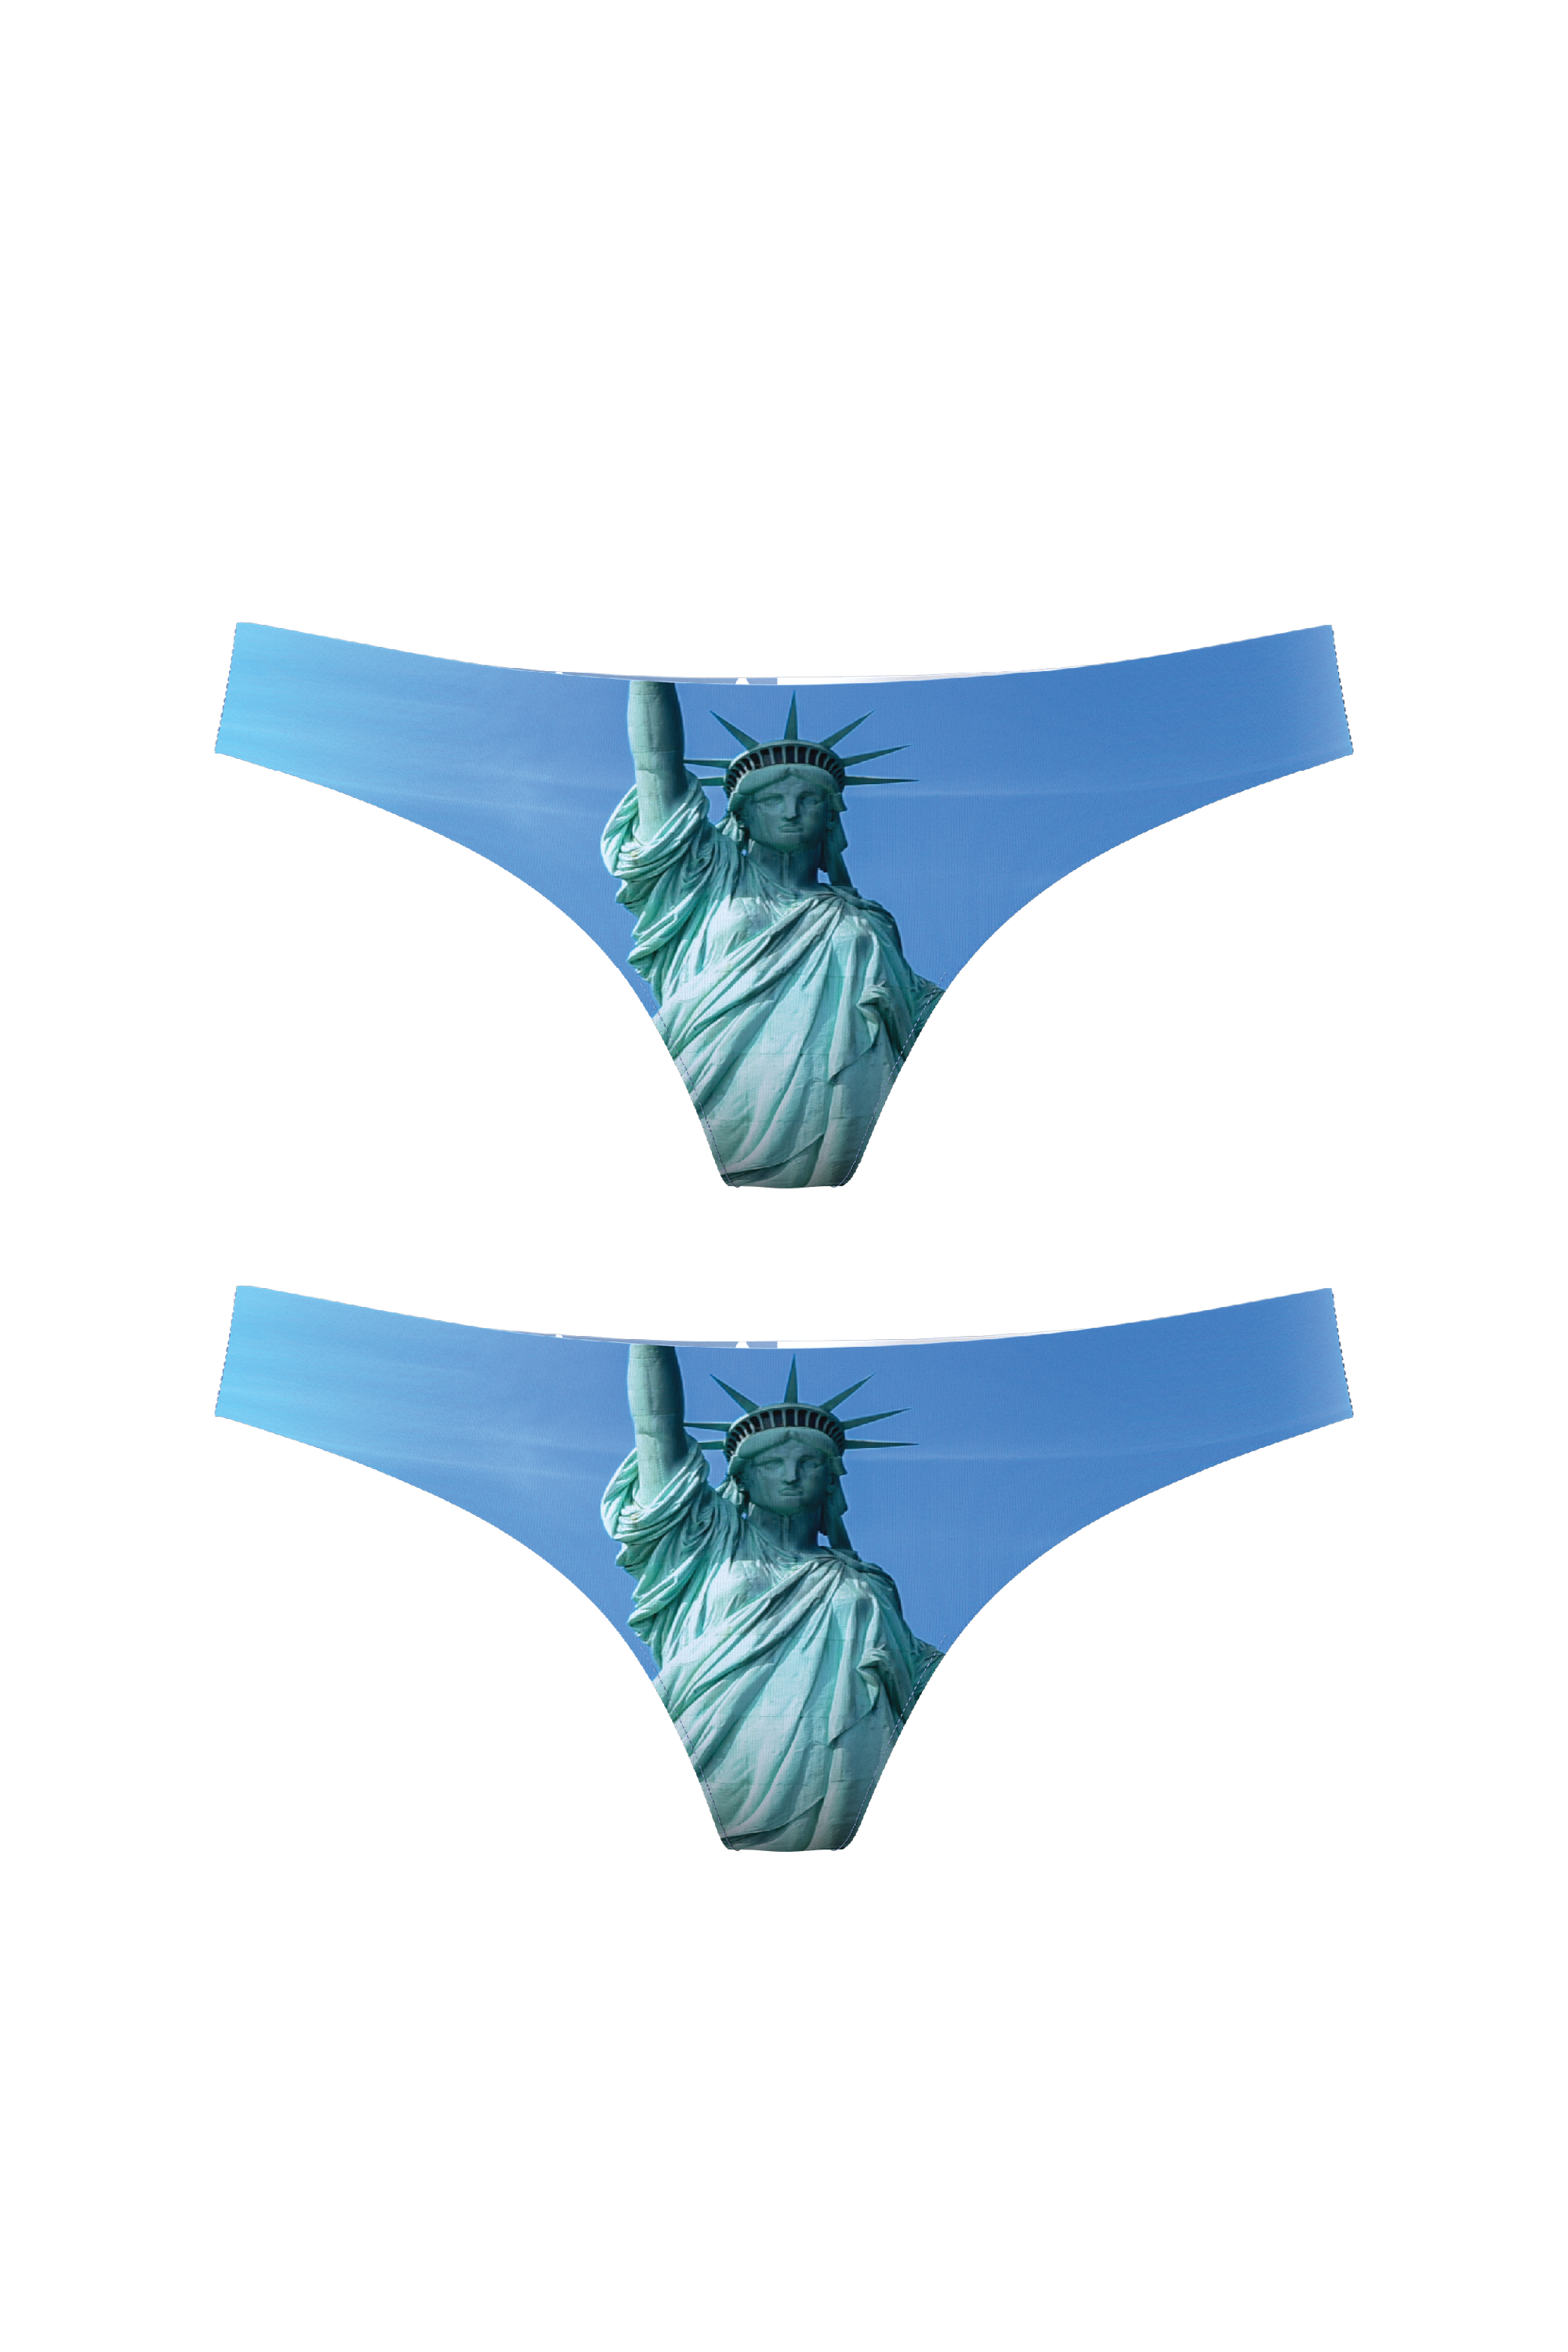 Shop Couples Matching Underwear & Undies by Shinesty